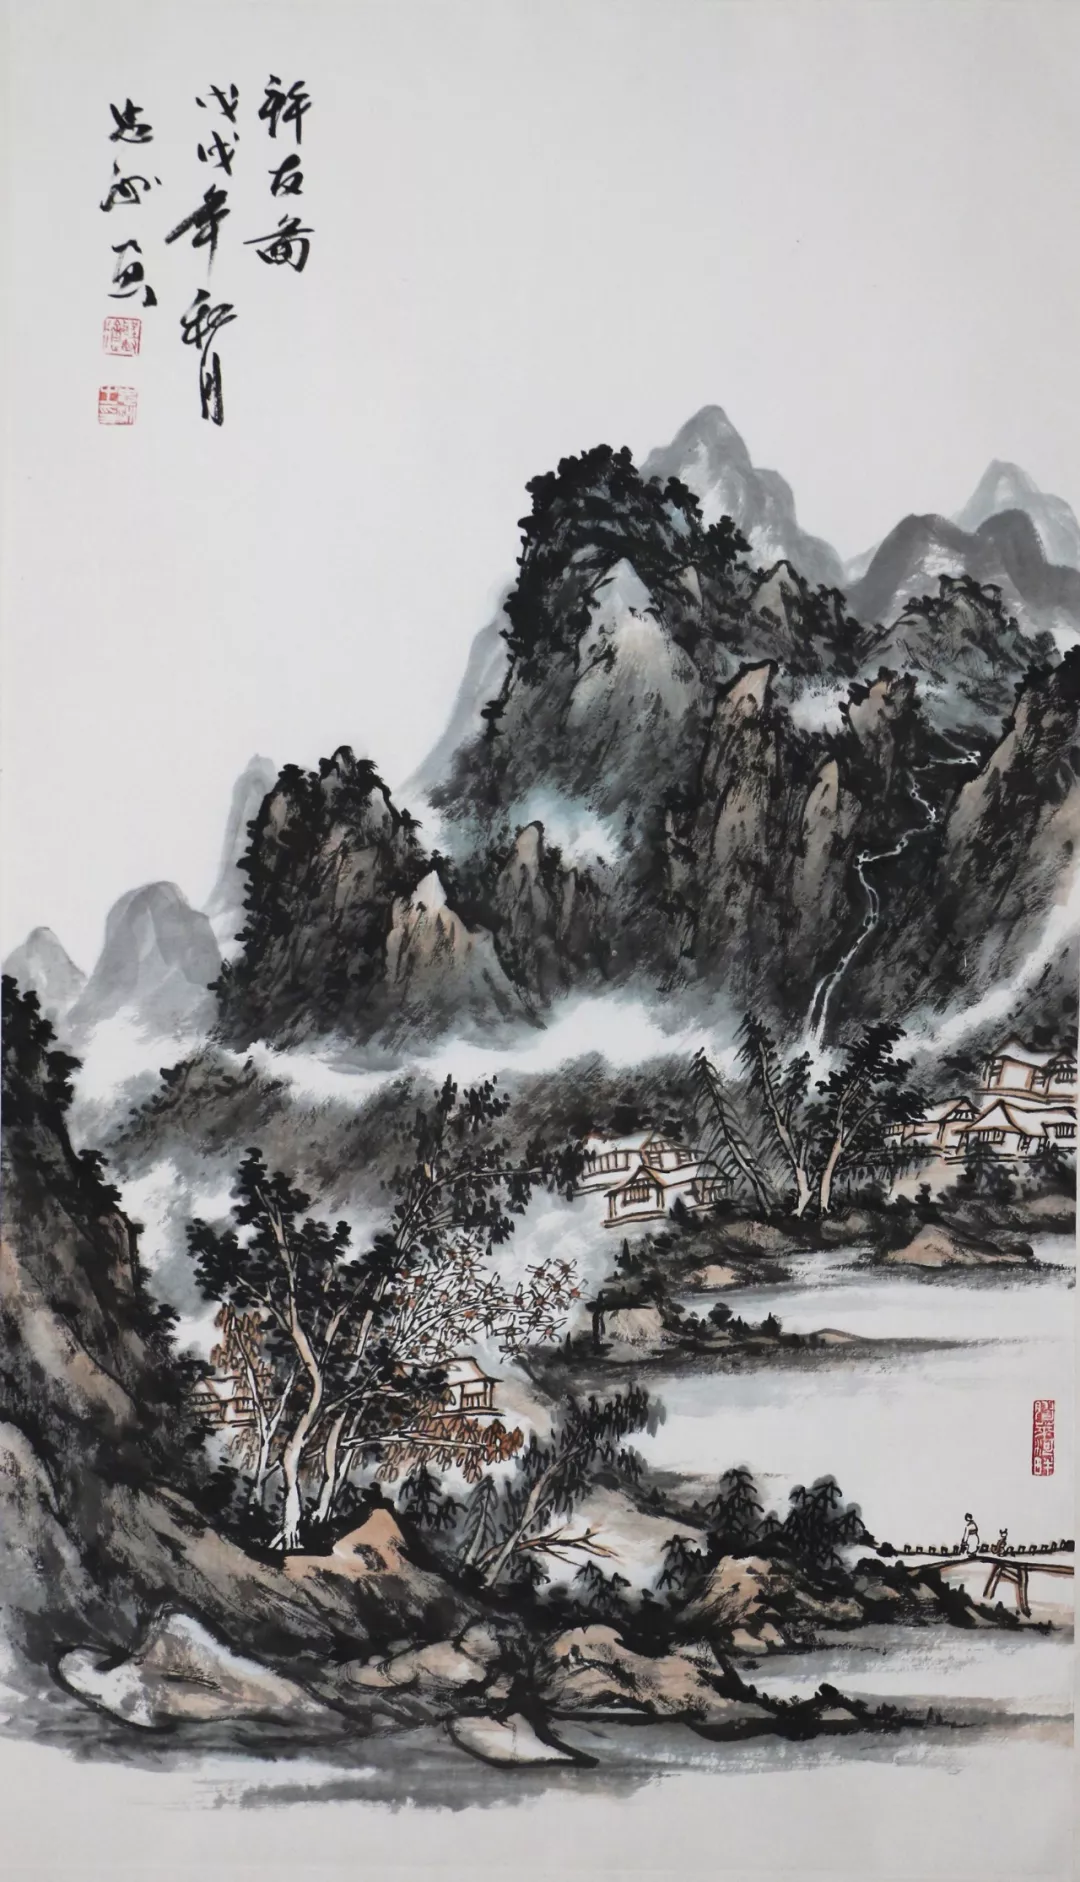 中国山水画精神:传承经典